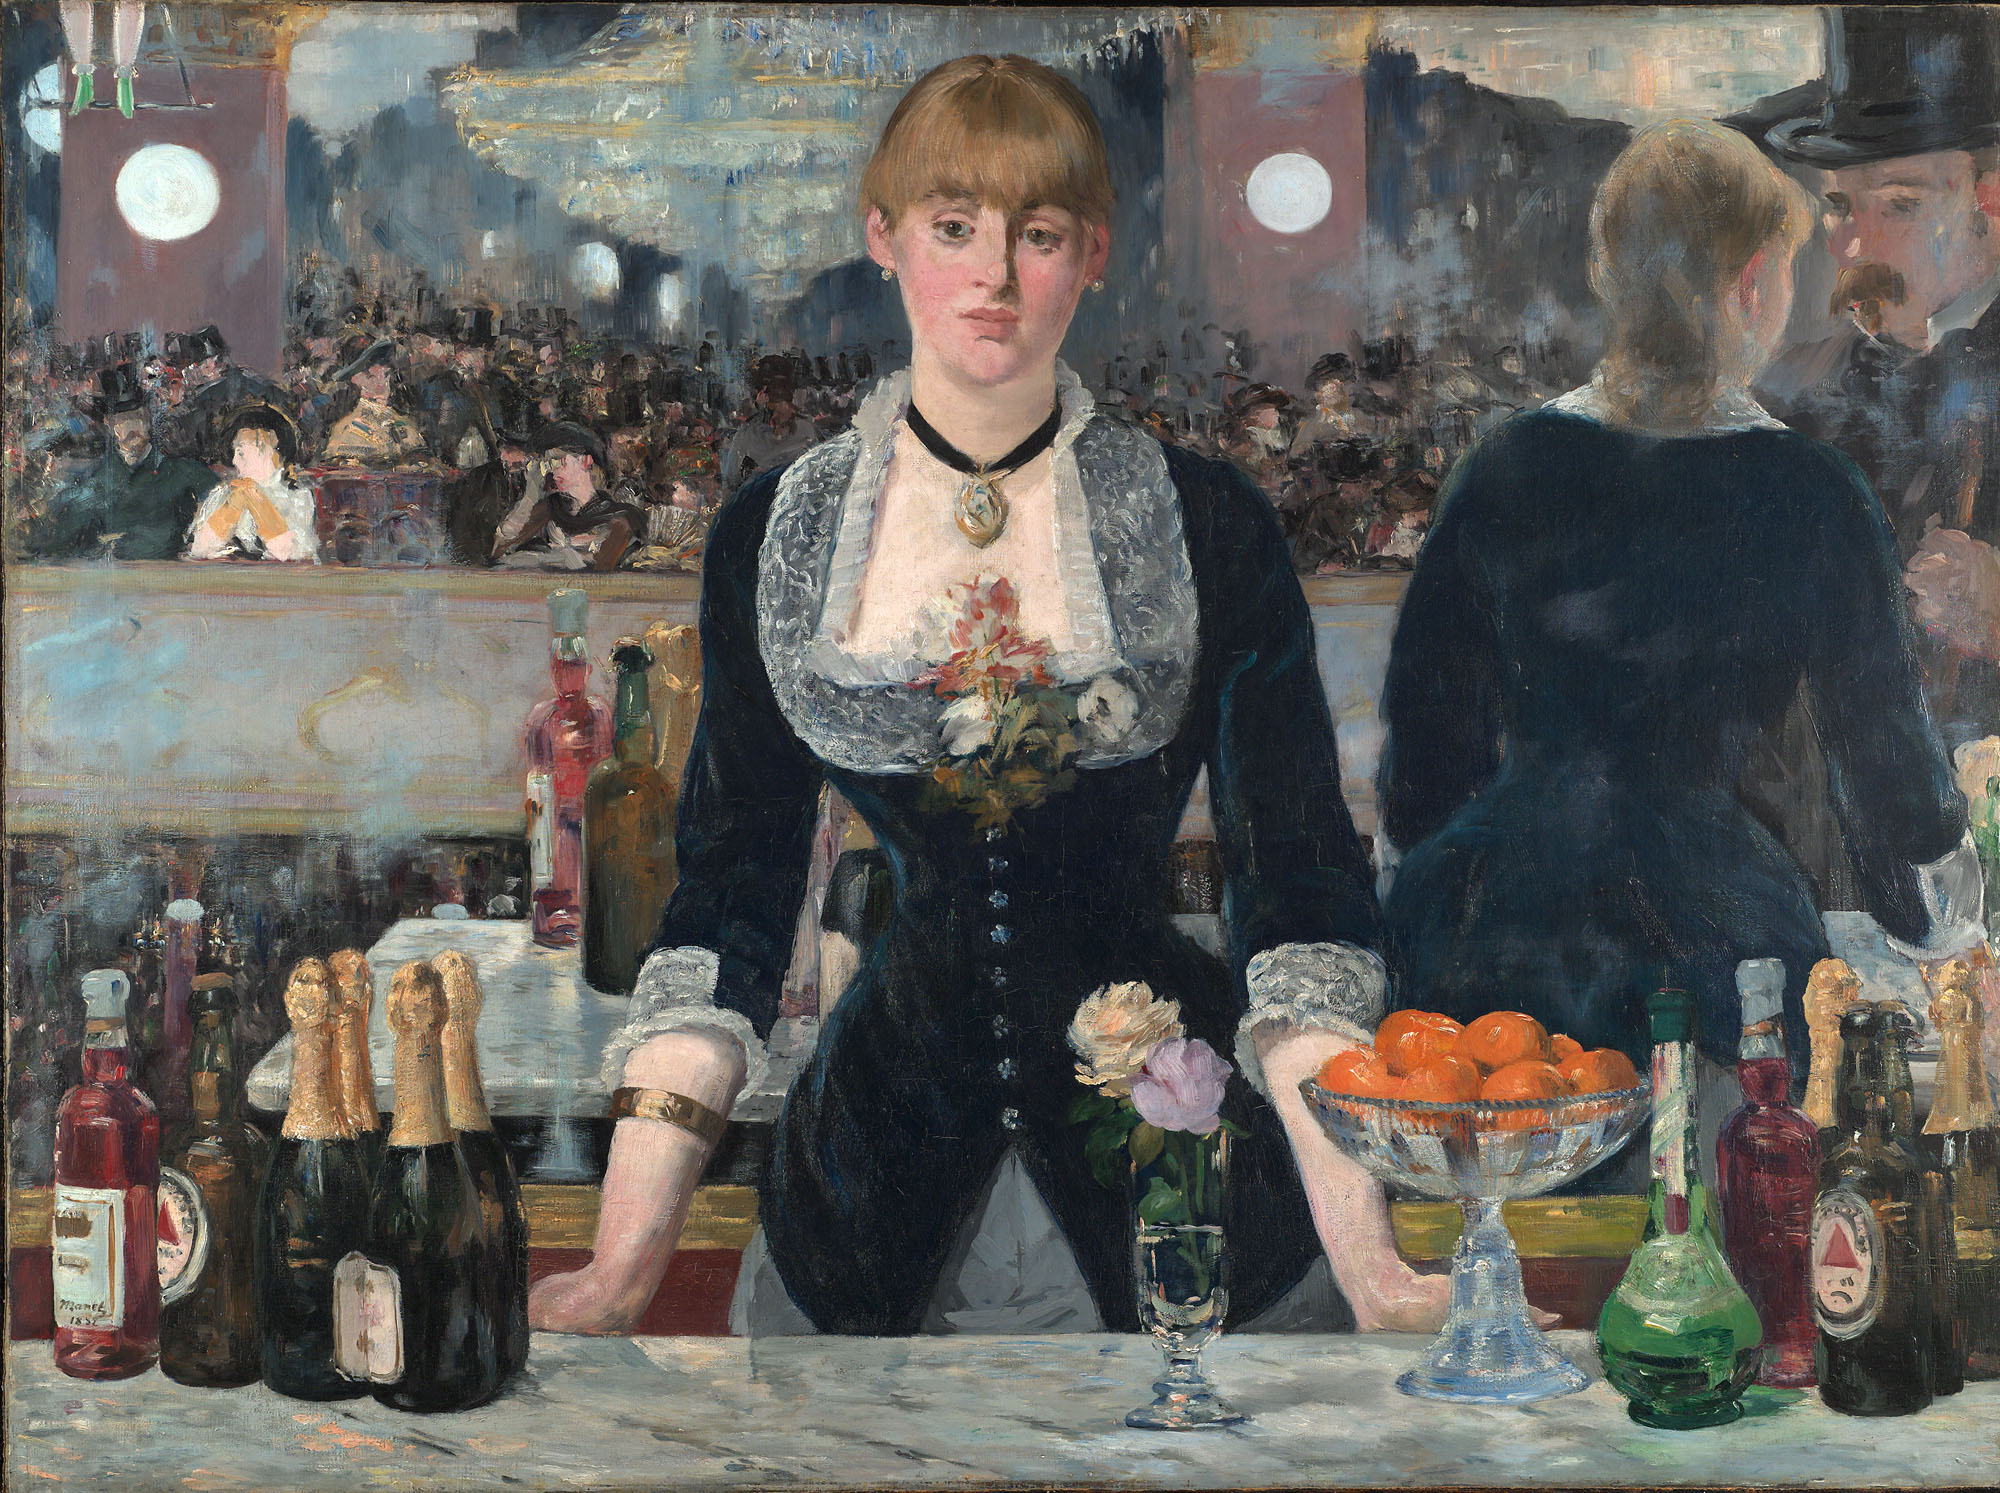 Un Bar la Folies-Bergère by Édouard Manet - 1882 - 96 × 130 cm 